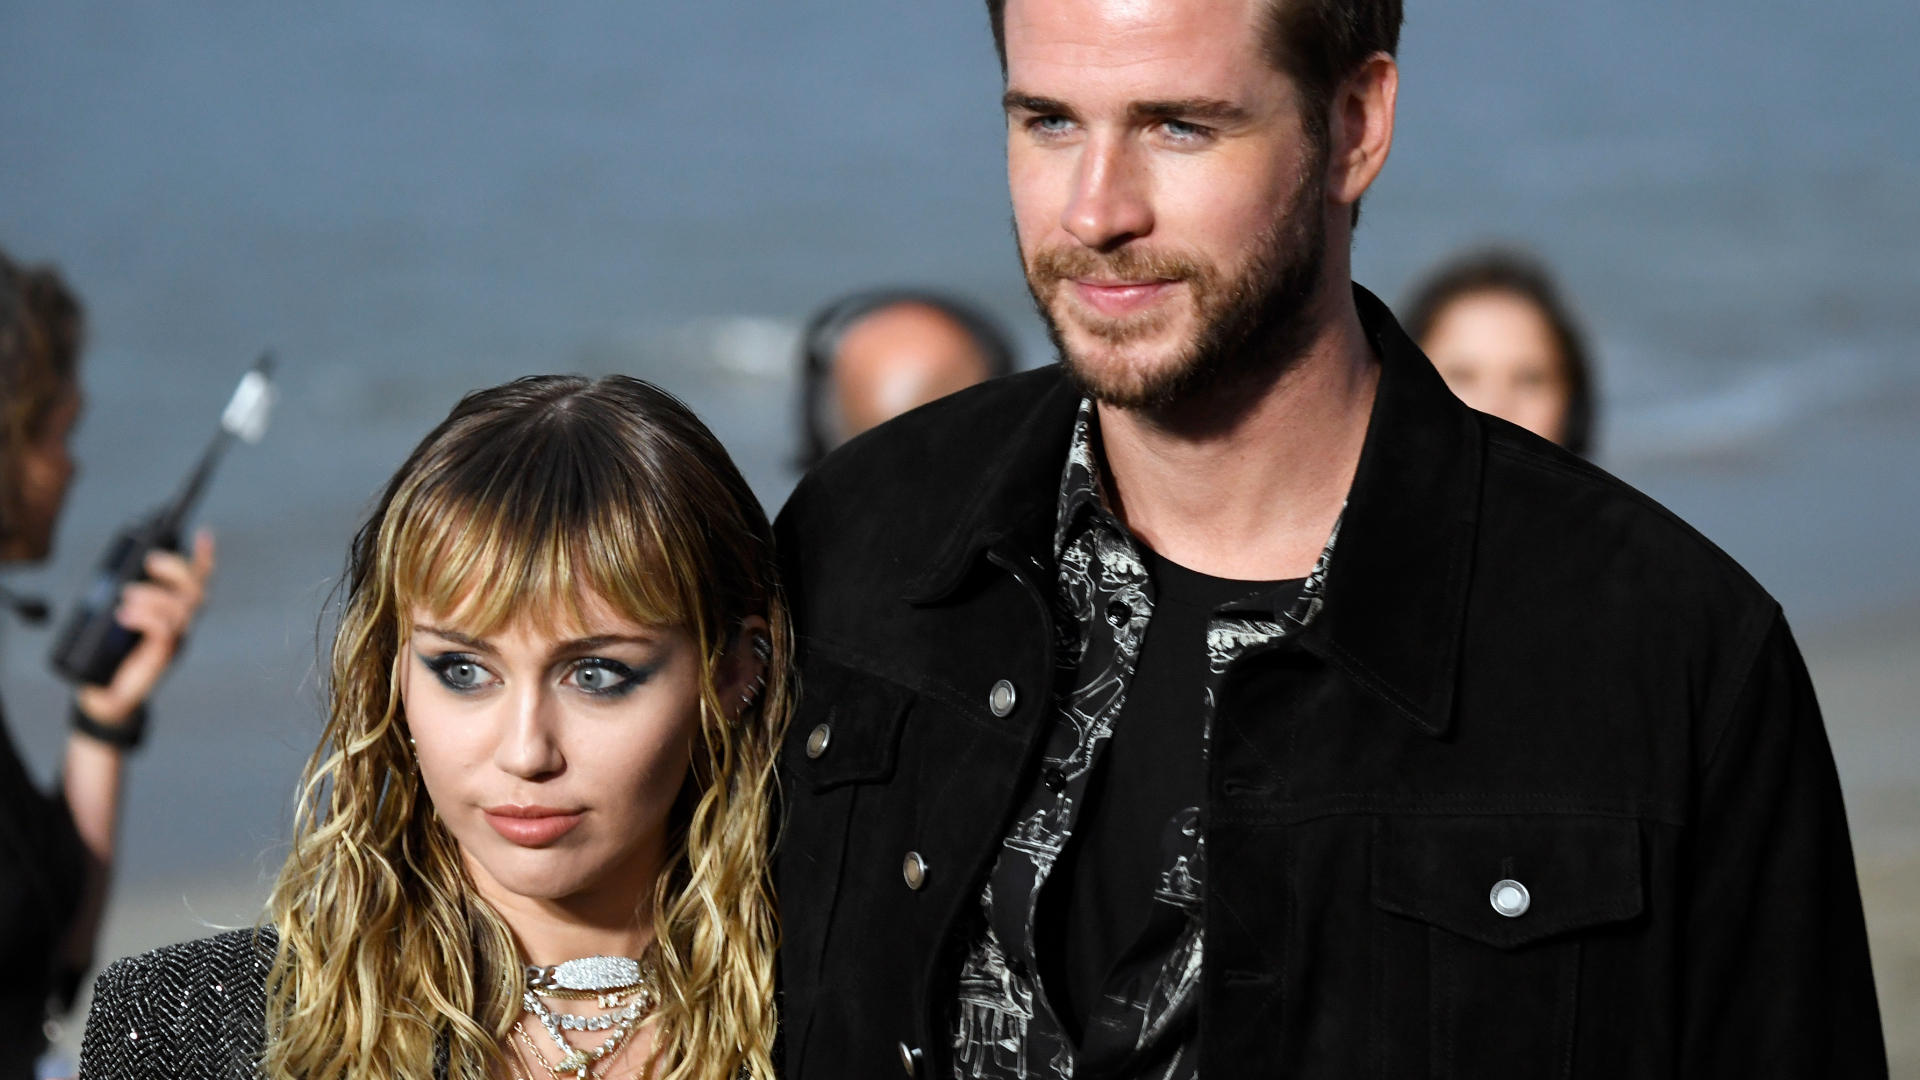 Fãs apontam que Miley Cyrus expôs traições de Liam Hemsworth em nova música: “Deve estar apavorado”